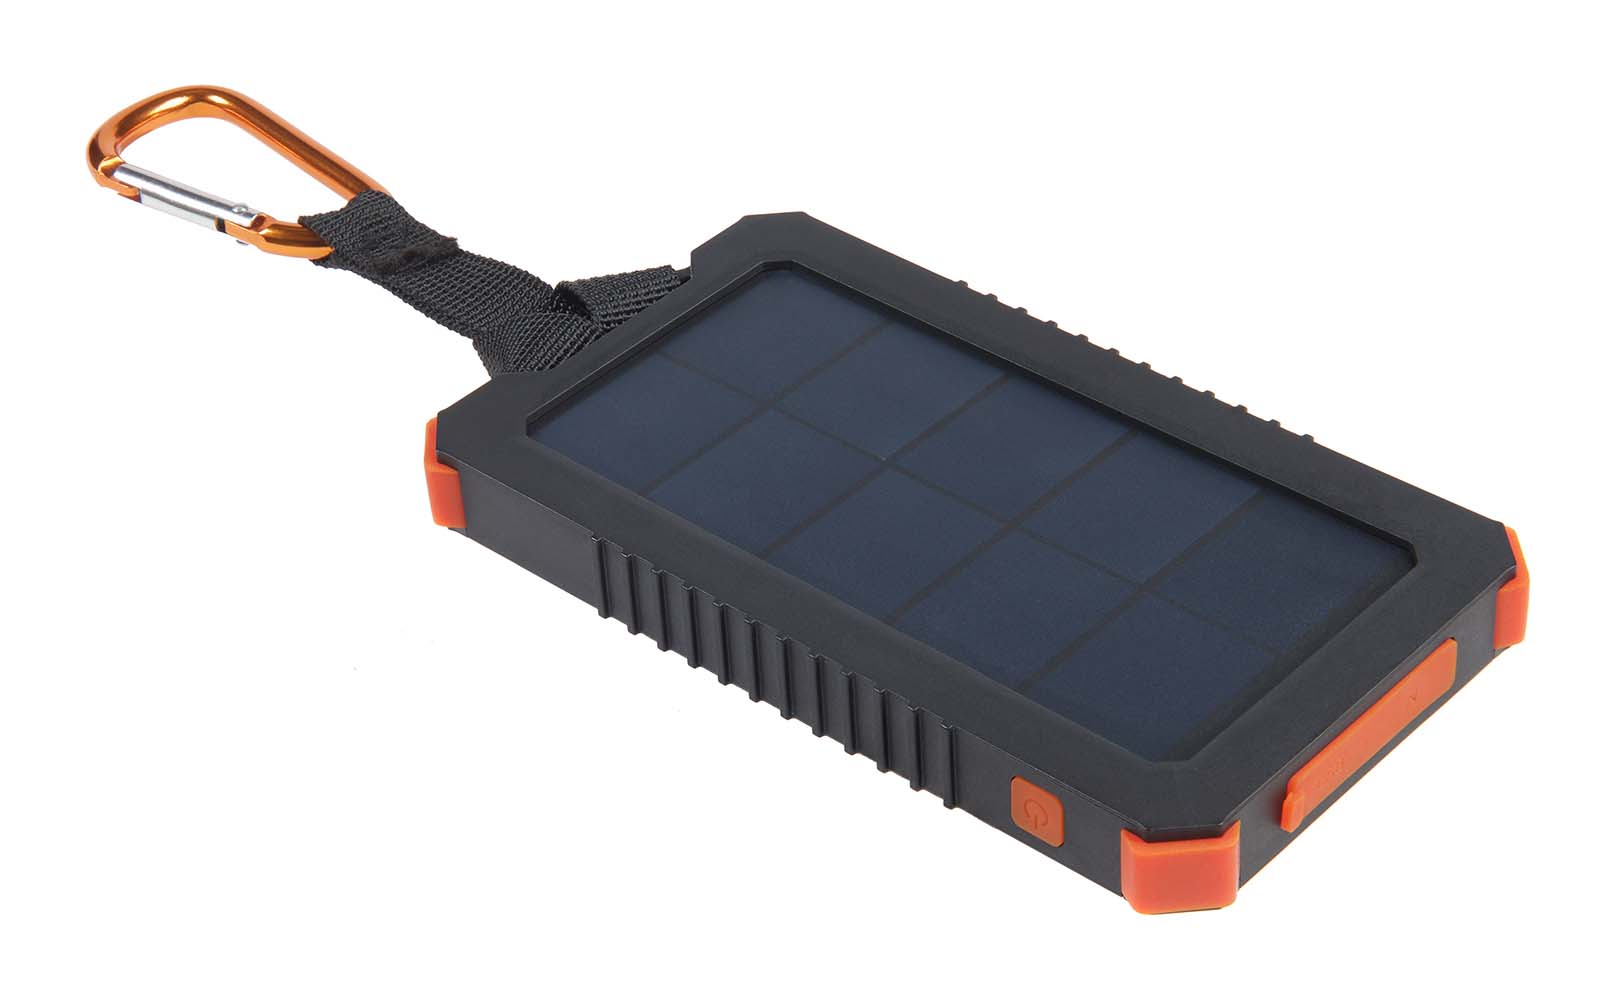 5921079 De Impulse Solar lader ideaal voor onderweg. De lader is valbestendig (1M), spatwaterdicht. De solar lader beschikt over een interne batterij van 5.000mAh, deze kan genoeg energie opslaan om uw smartphone 2 keer op te laden! De solar lader is voorzien van een handige zaklamp. De interne batterij is gemakkelijk weer op te laden via USB of netstroom, of door gebruik te maken van het zonnepaneel.